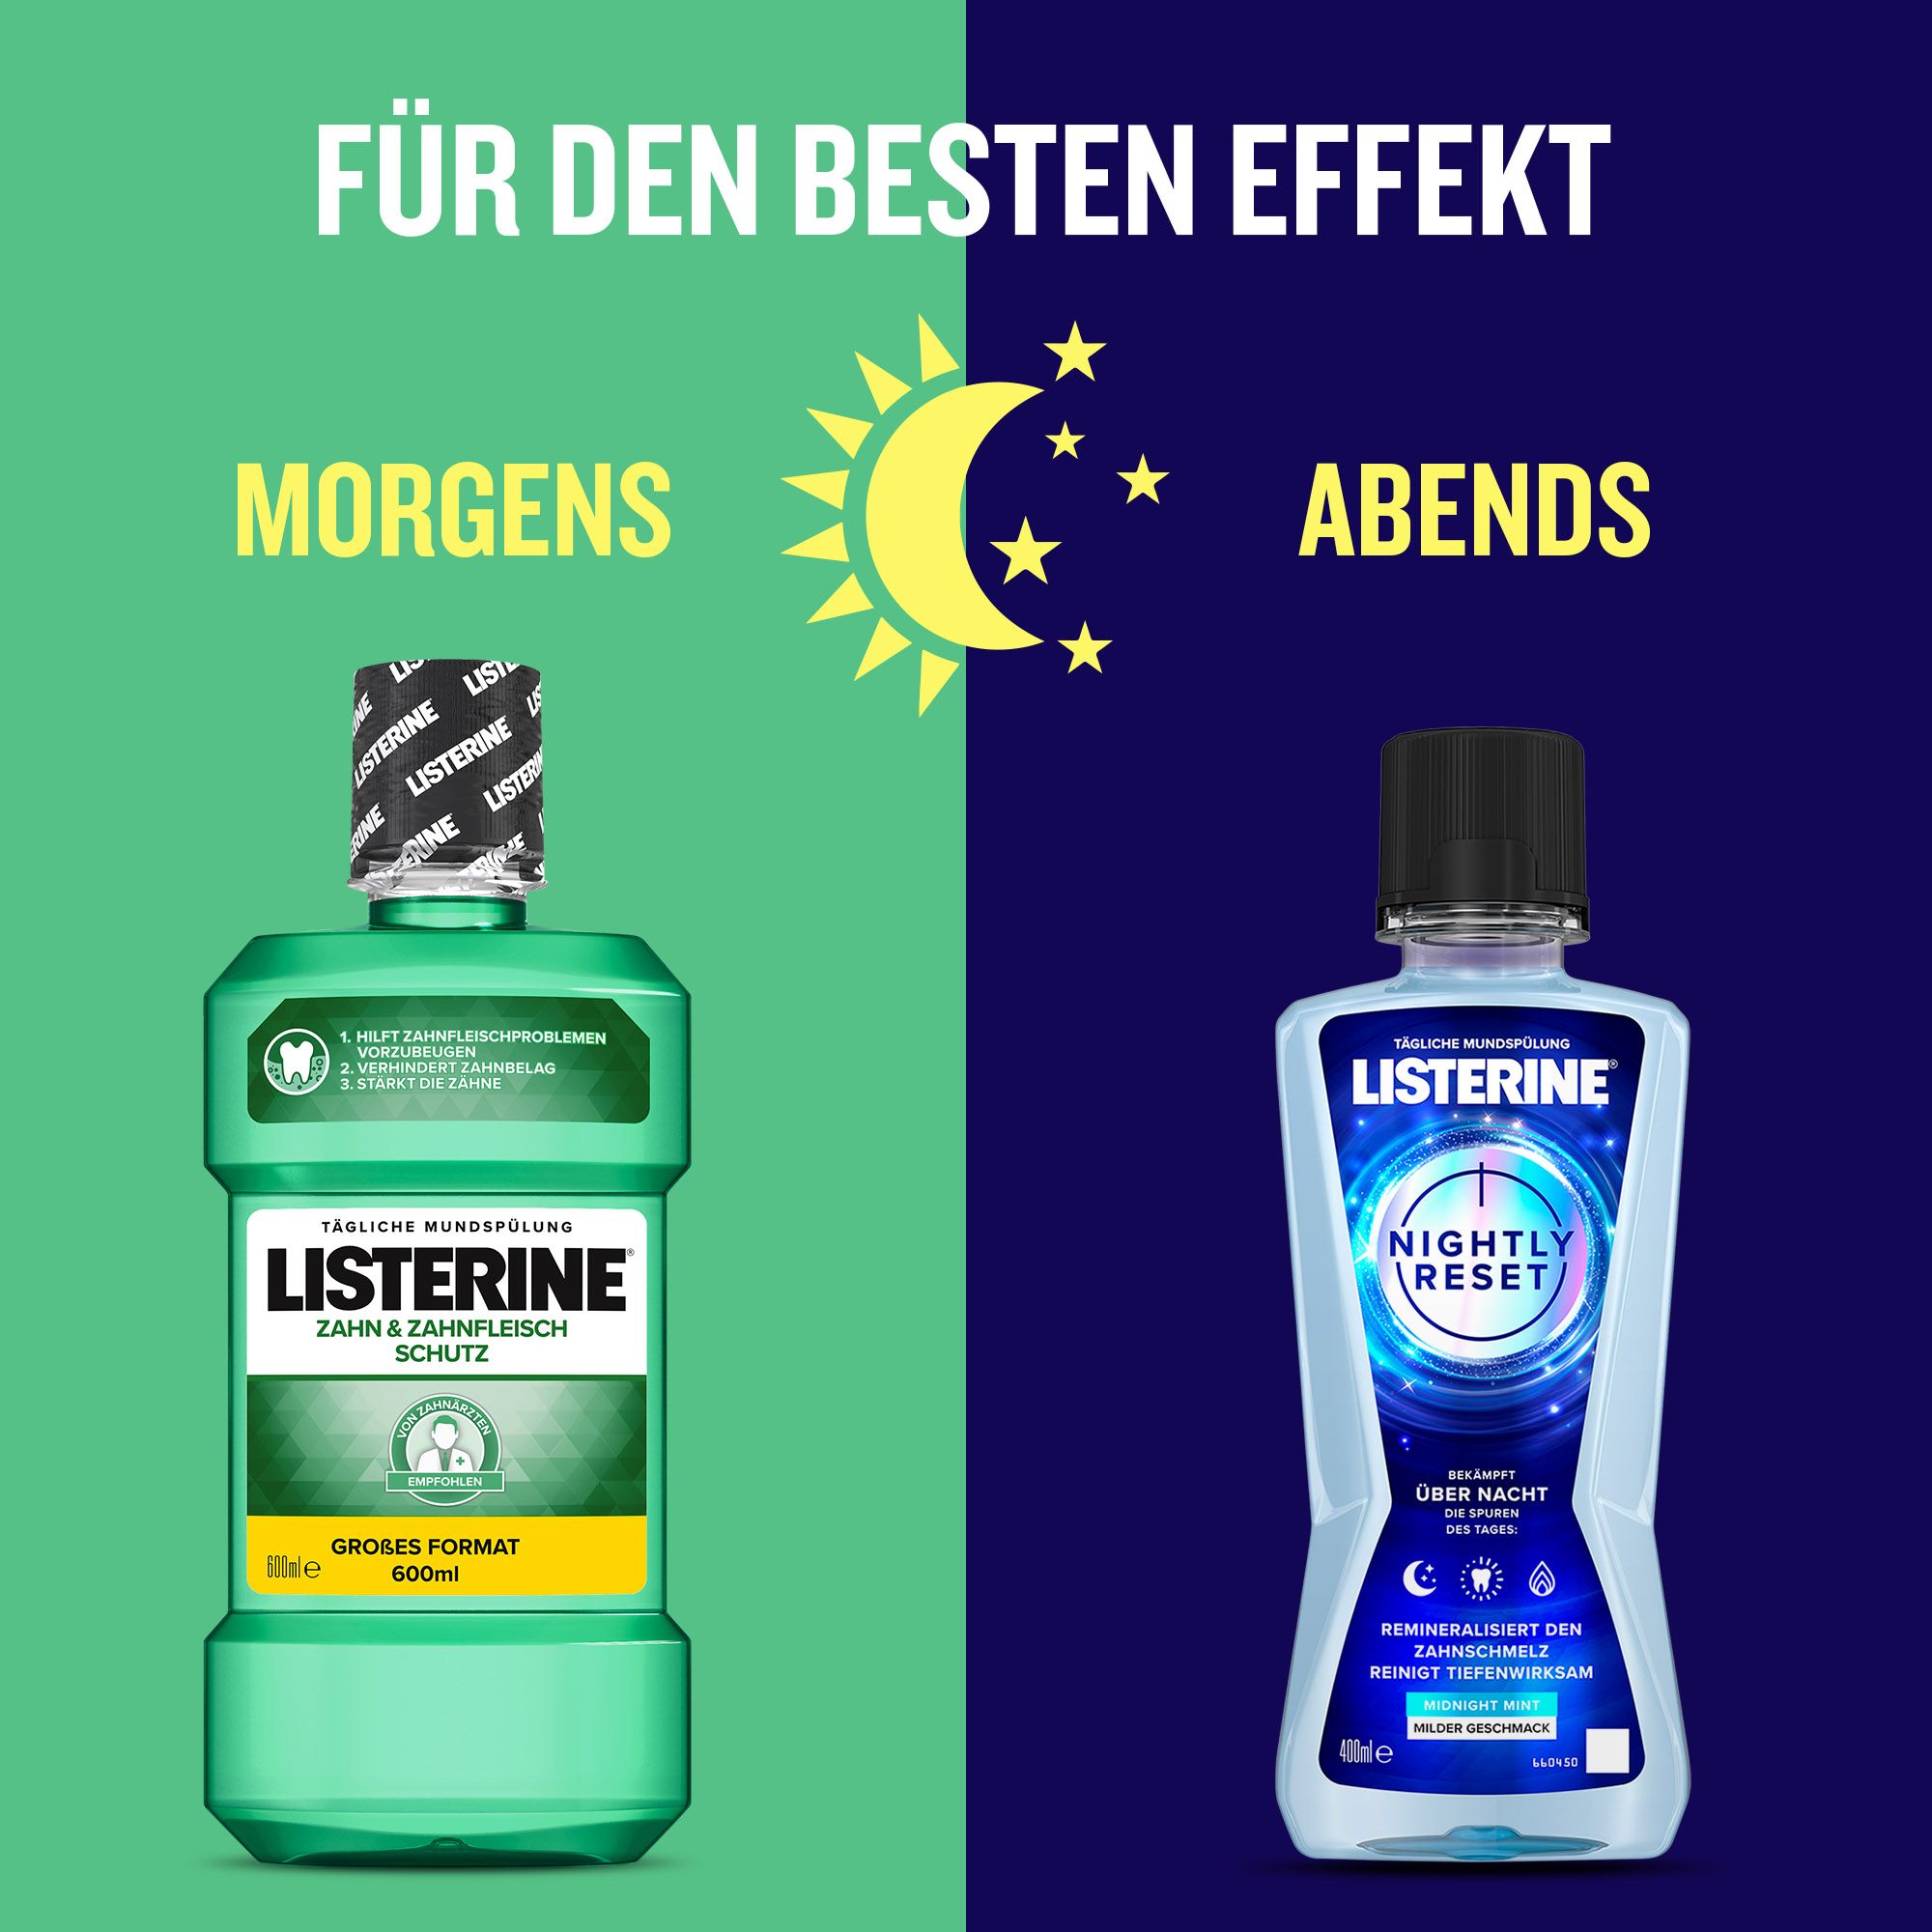 Listerine - 5tlg. Set "Zahn- und Zahnfleischschutz & Nightly Reset"